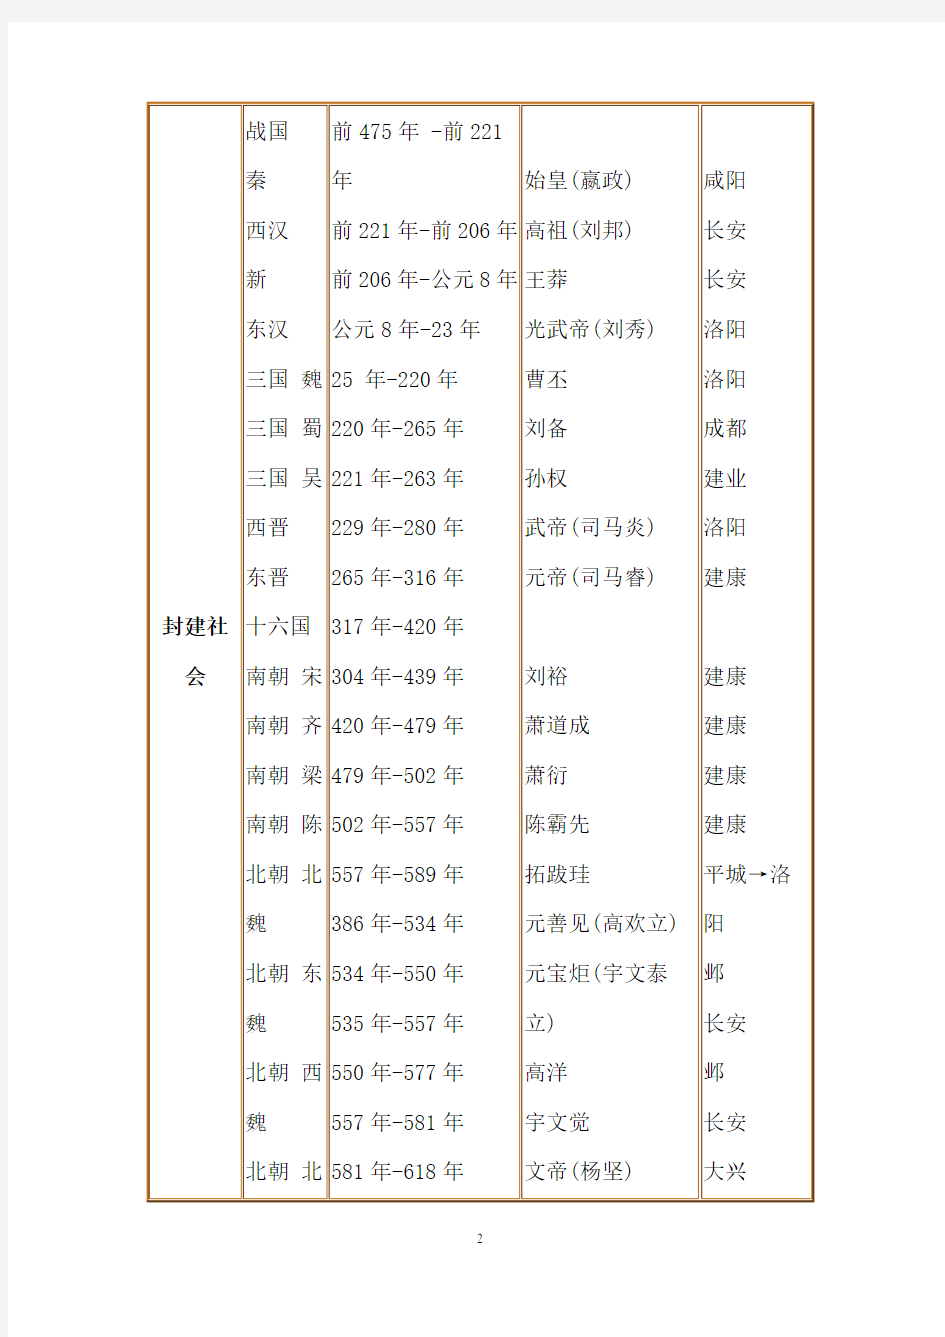 中国历史纪年表最详细版